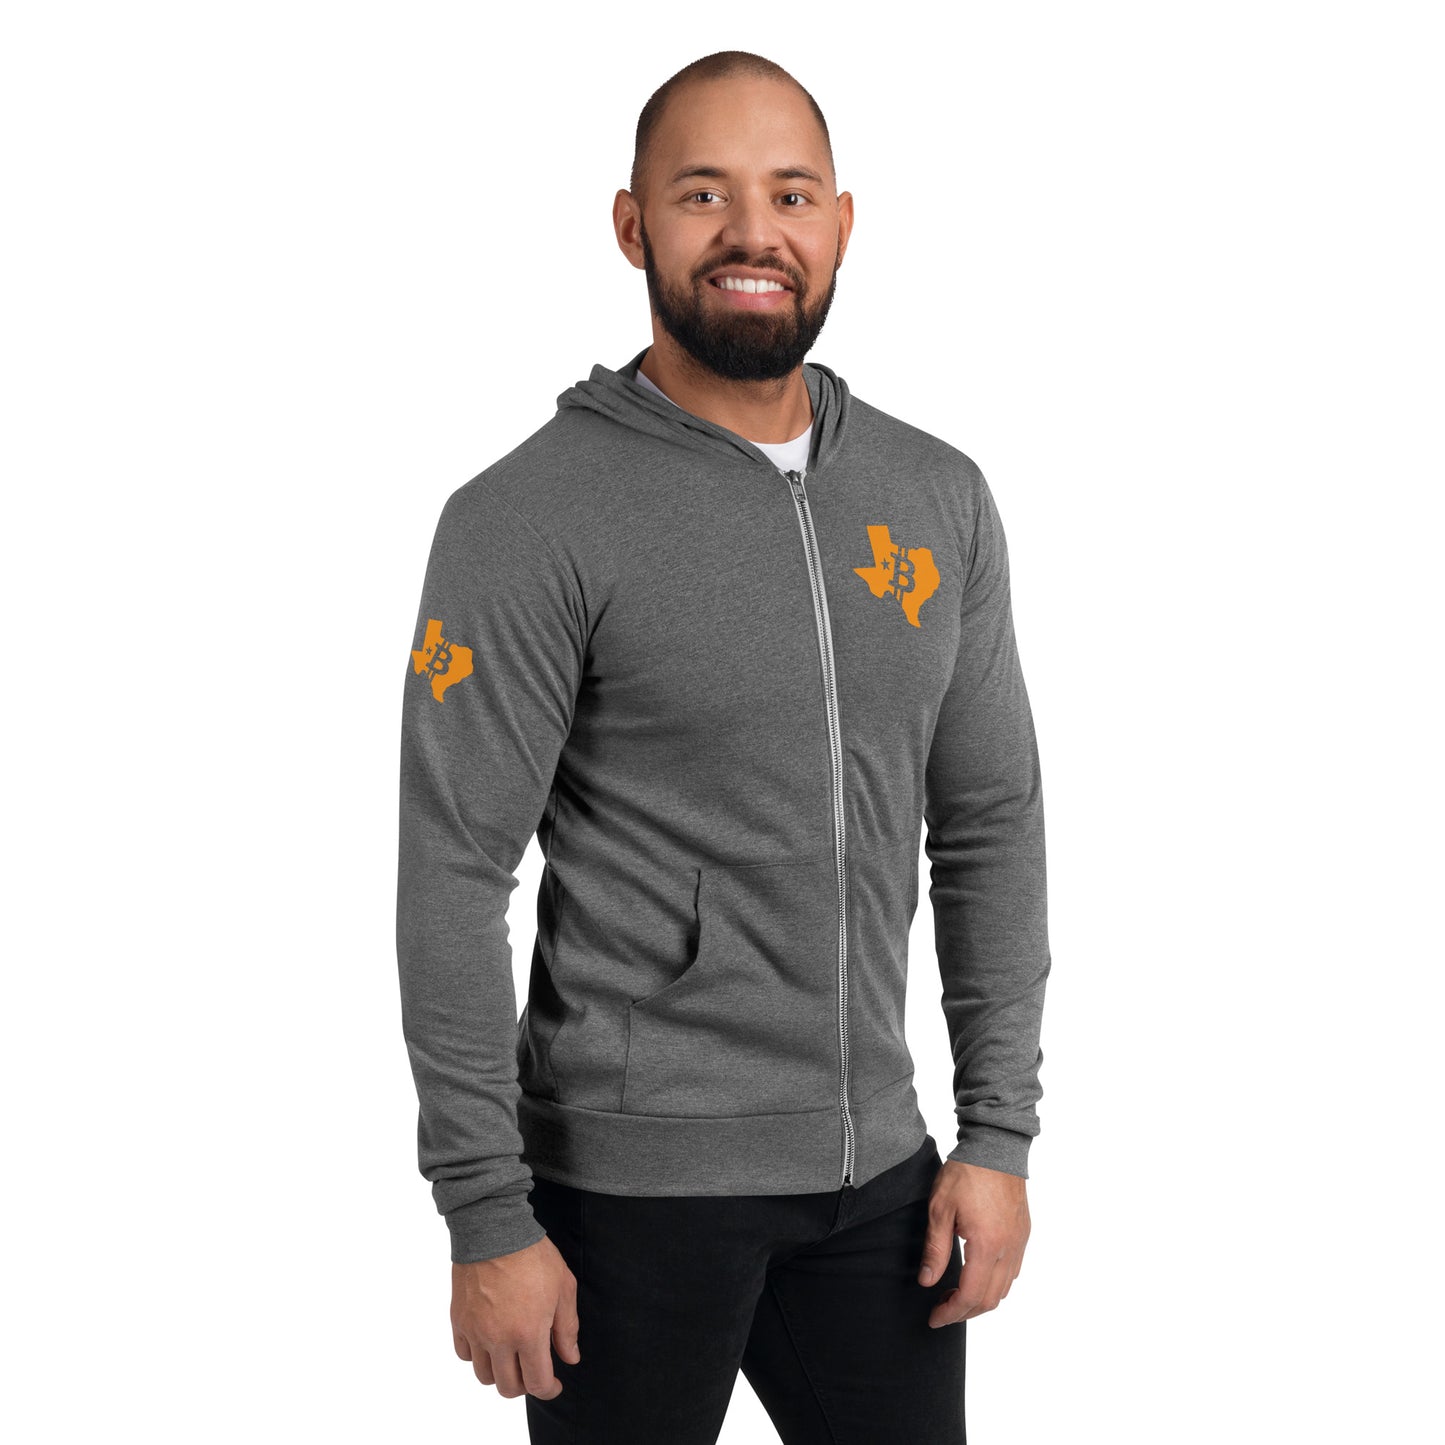 Unisex Orangepill Texas zip hoodie